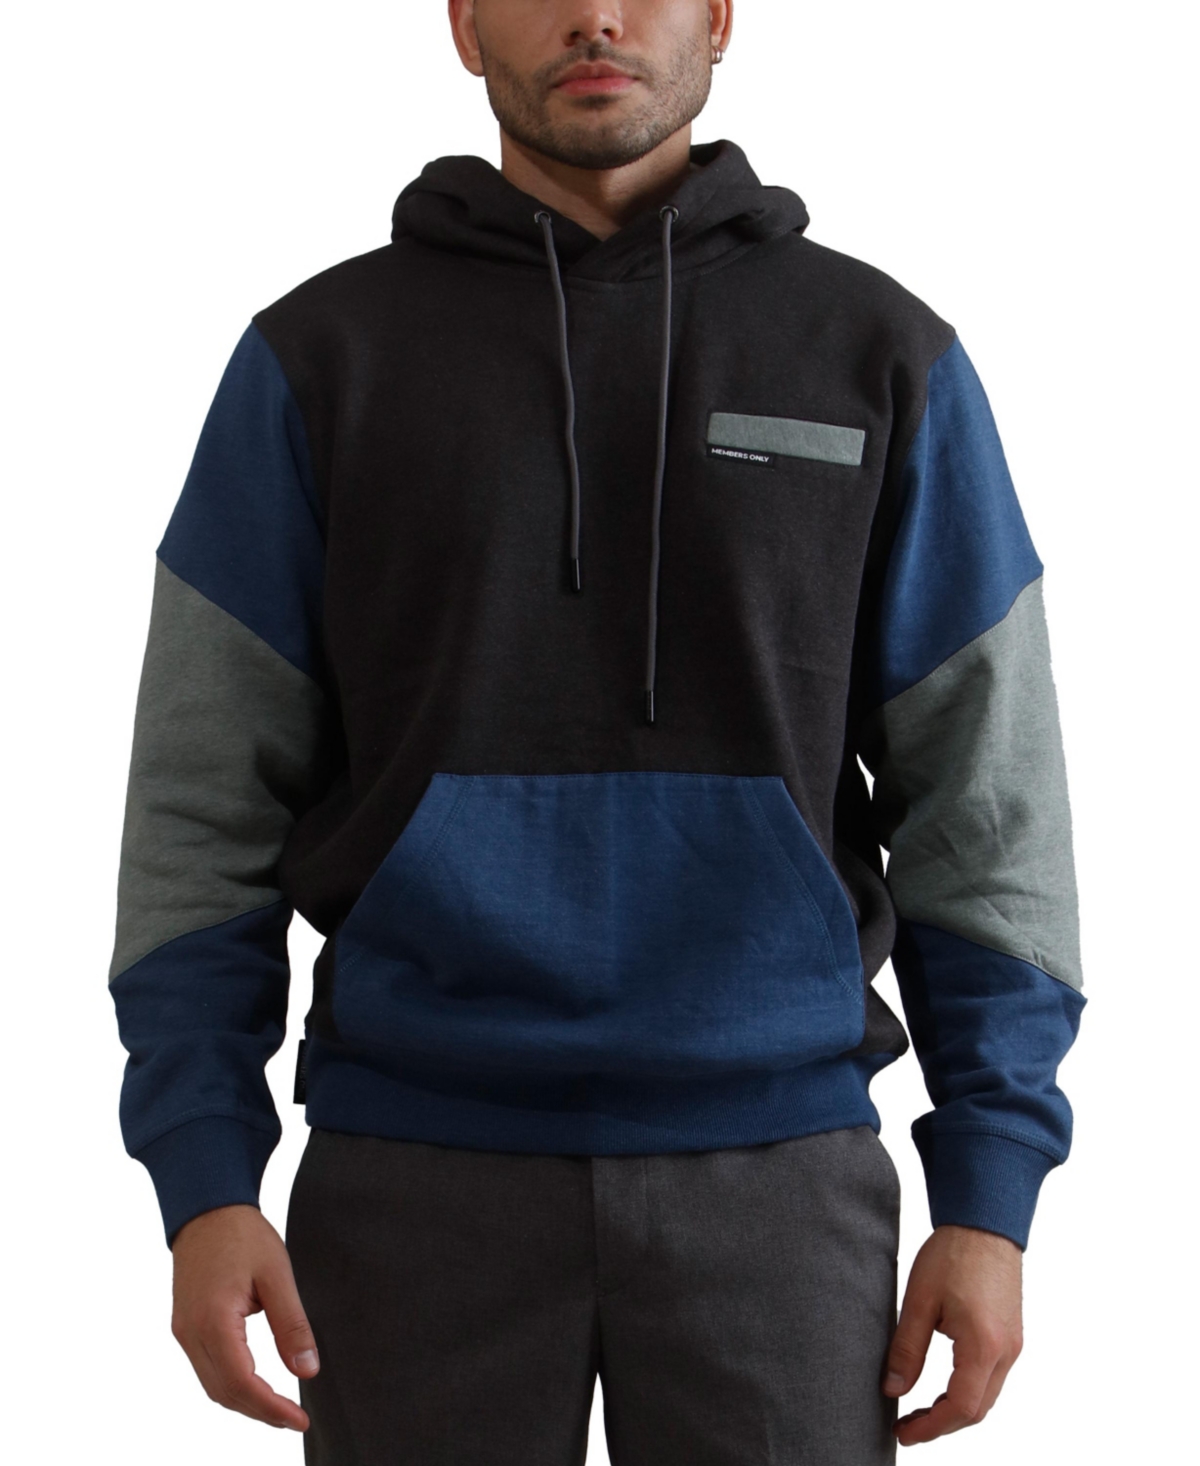 Drew Colorblock Hooded Sweatshirt for Men - Charcoal